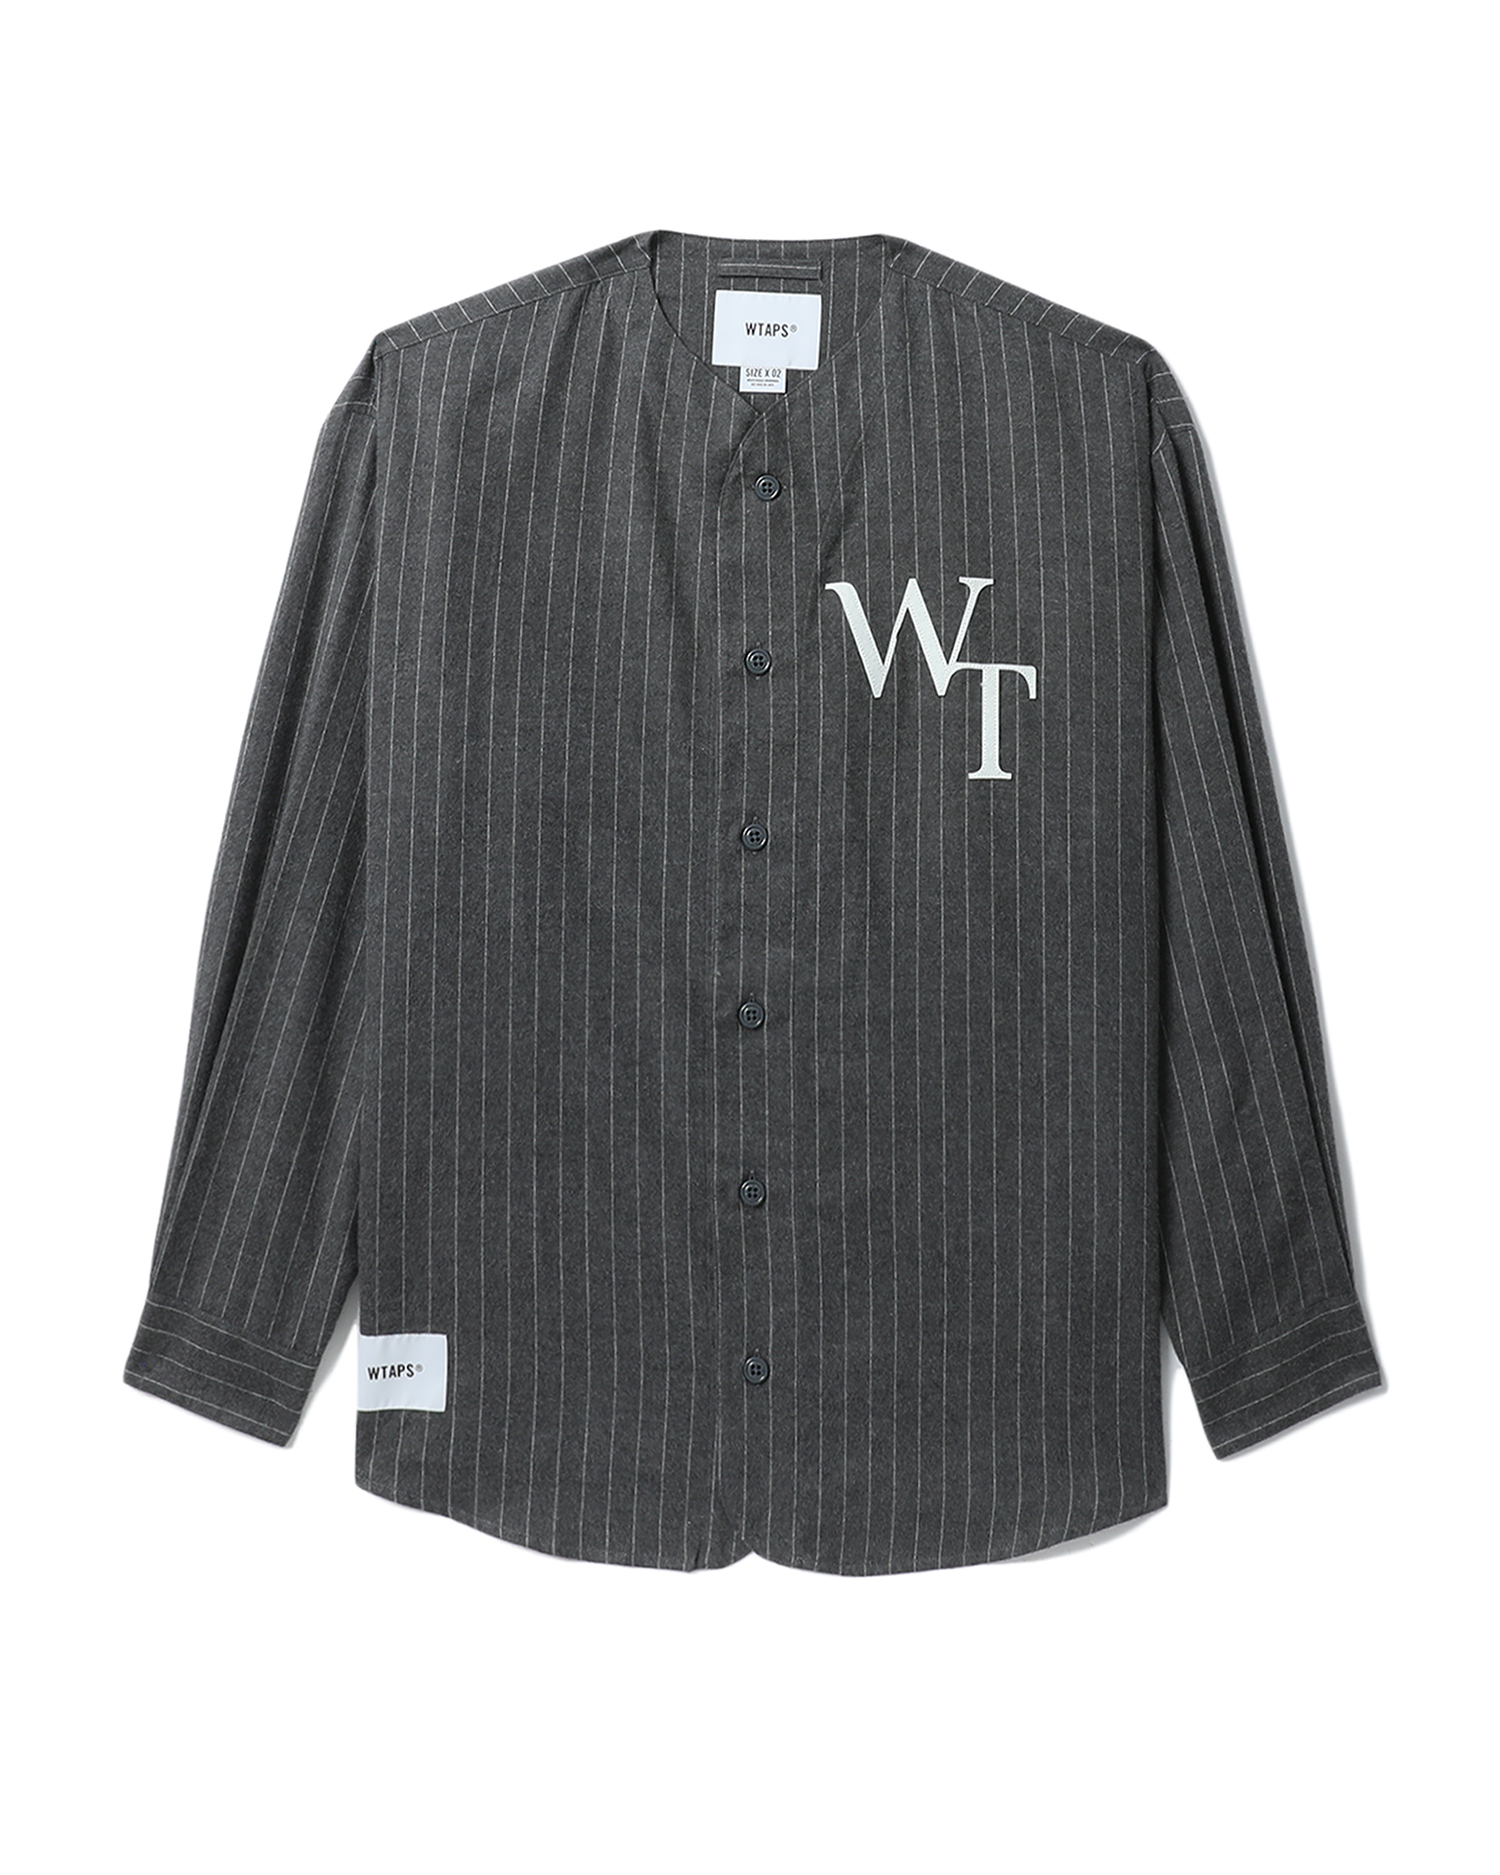 League / LS / Cotton. Flannel . Stripe shirt